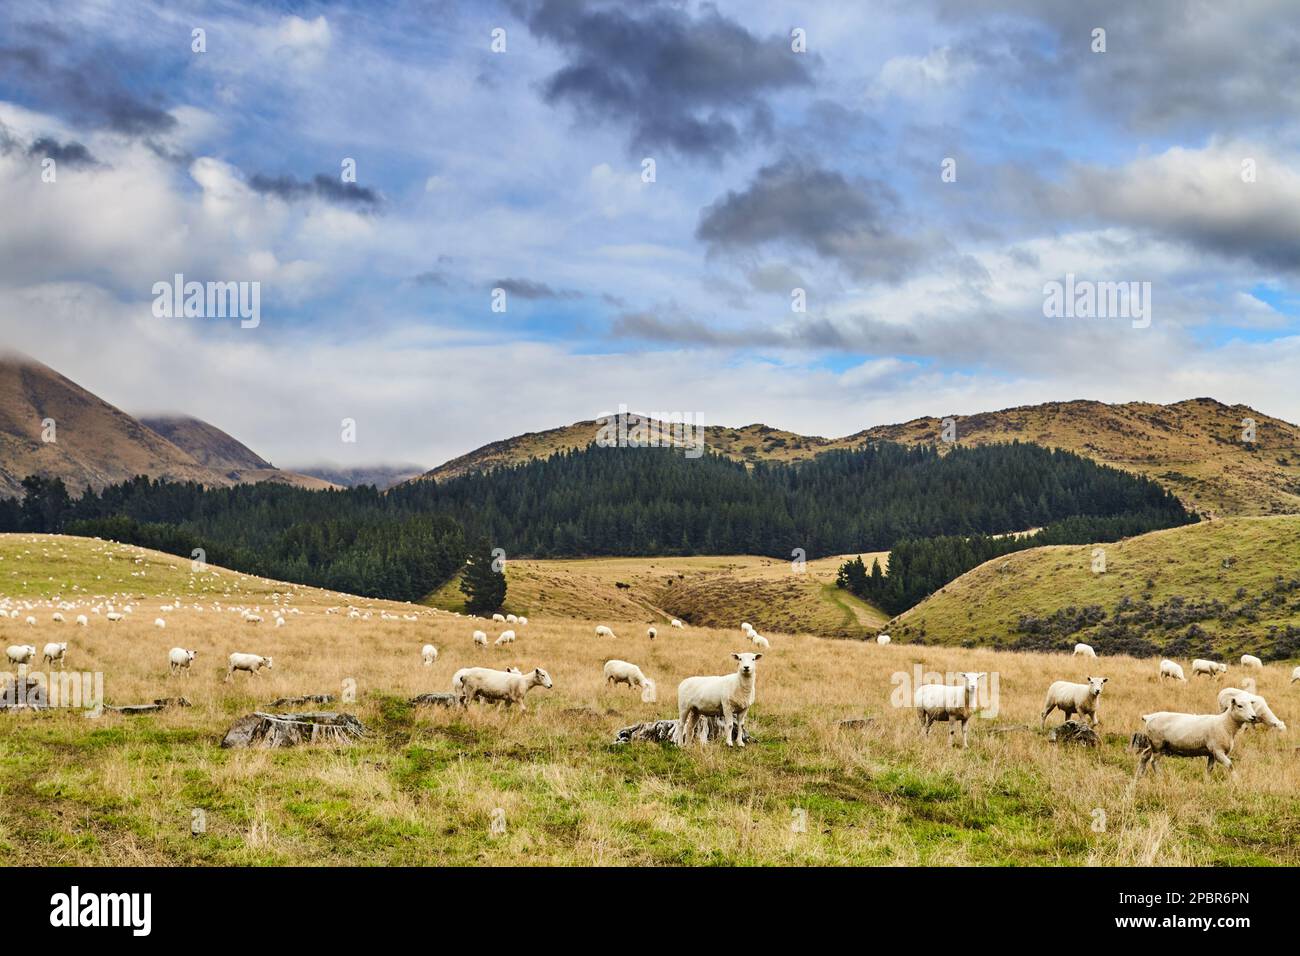 Neuseelands Landschaft mit Wald, wolkenlosem Himmel und Hügeln bedeckt von weidenden Schafen Stockfoto